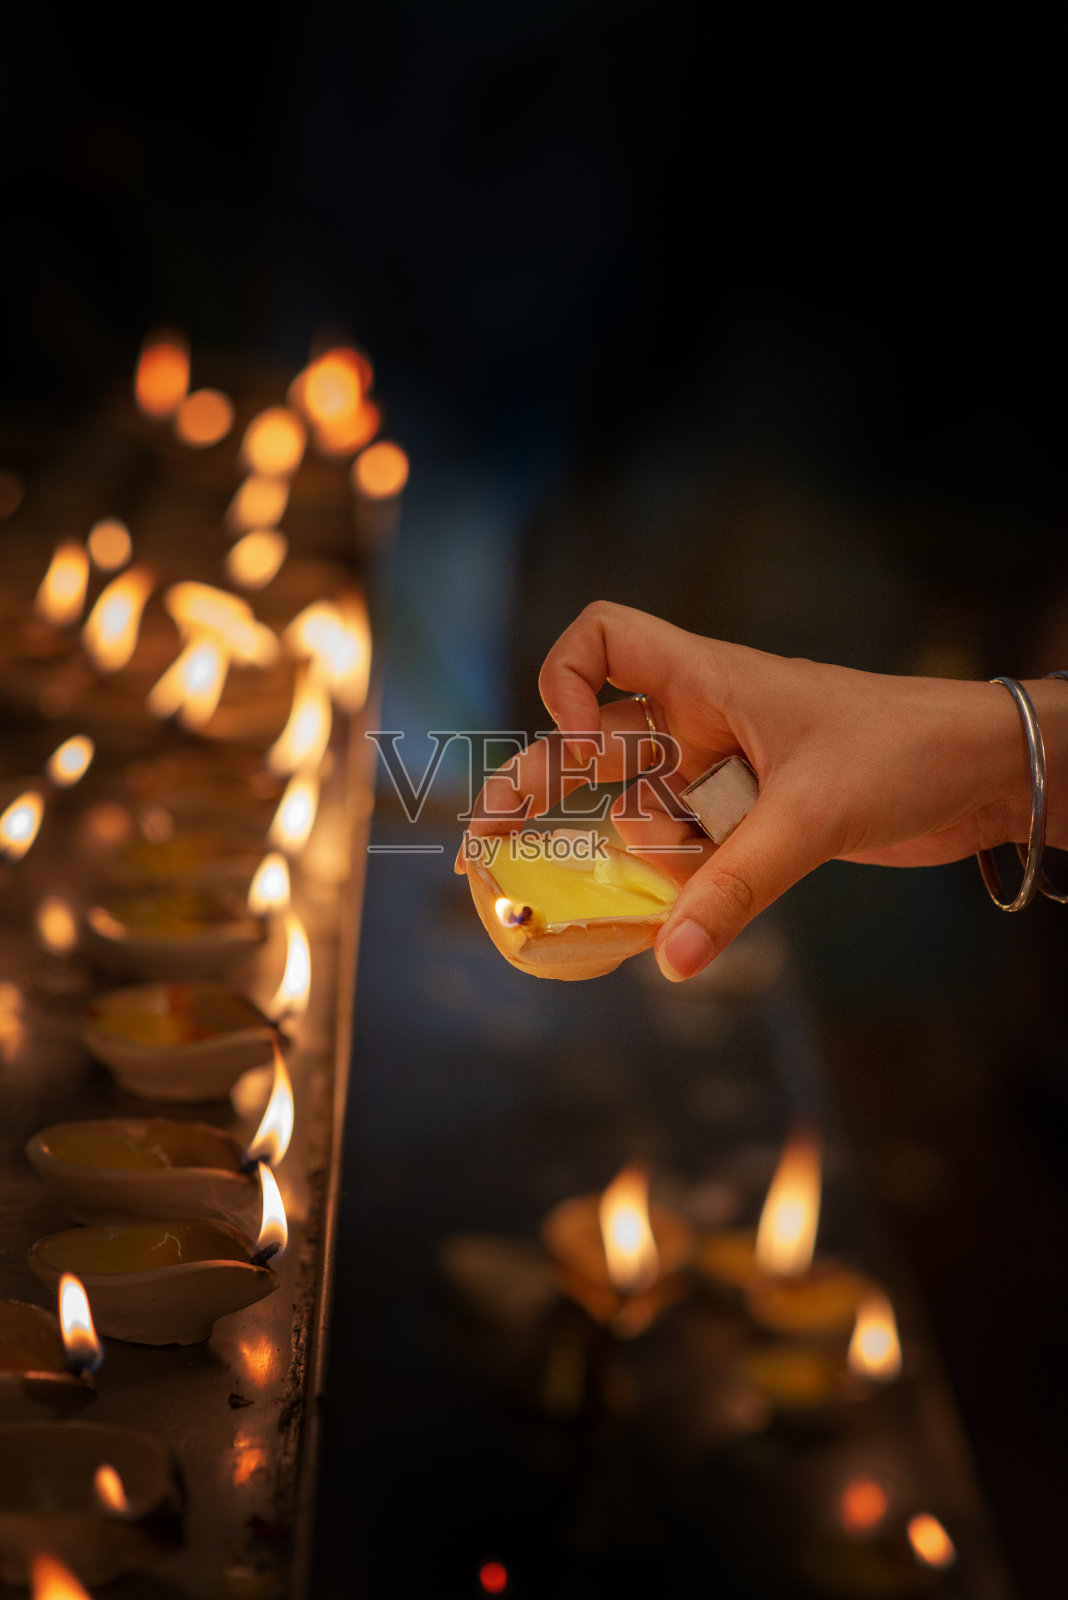 印度寺庙排灯节油灯照片摄影图片